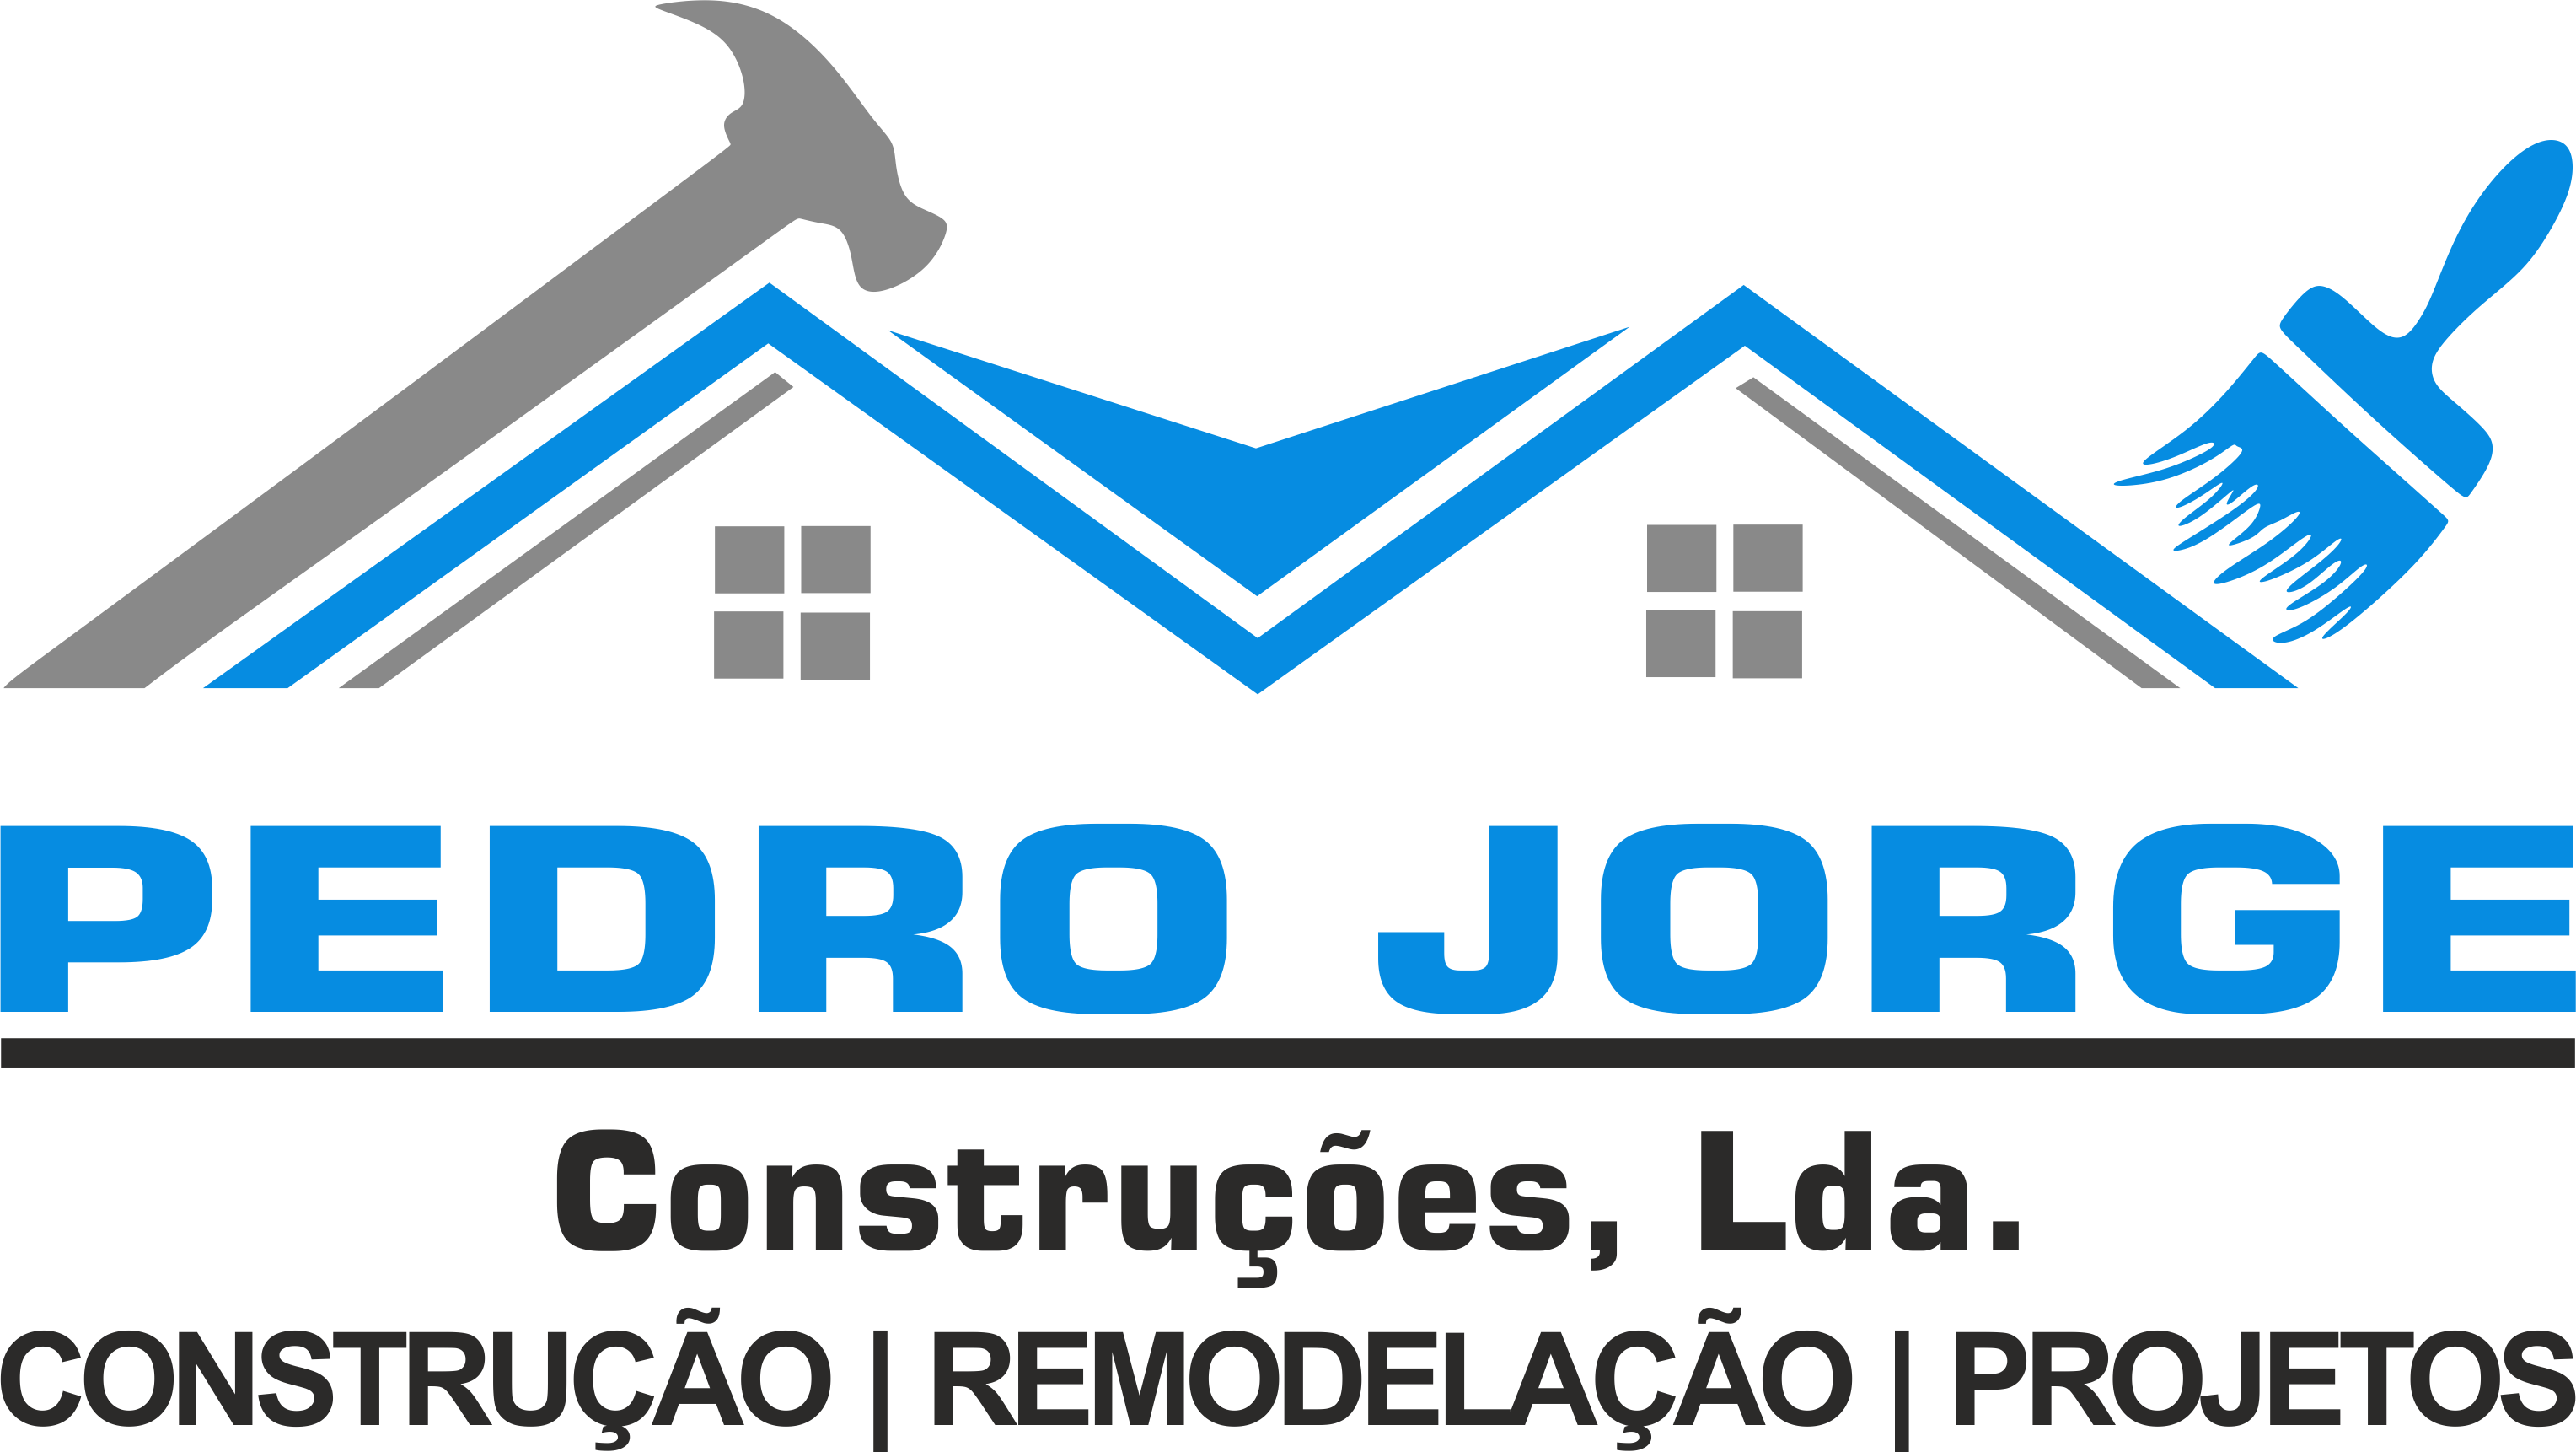 Pedro Jorge Construções